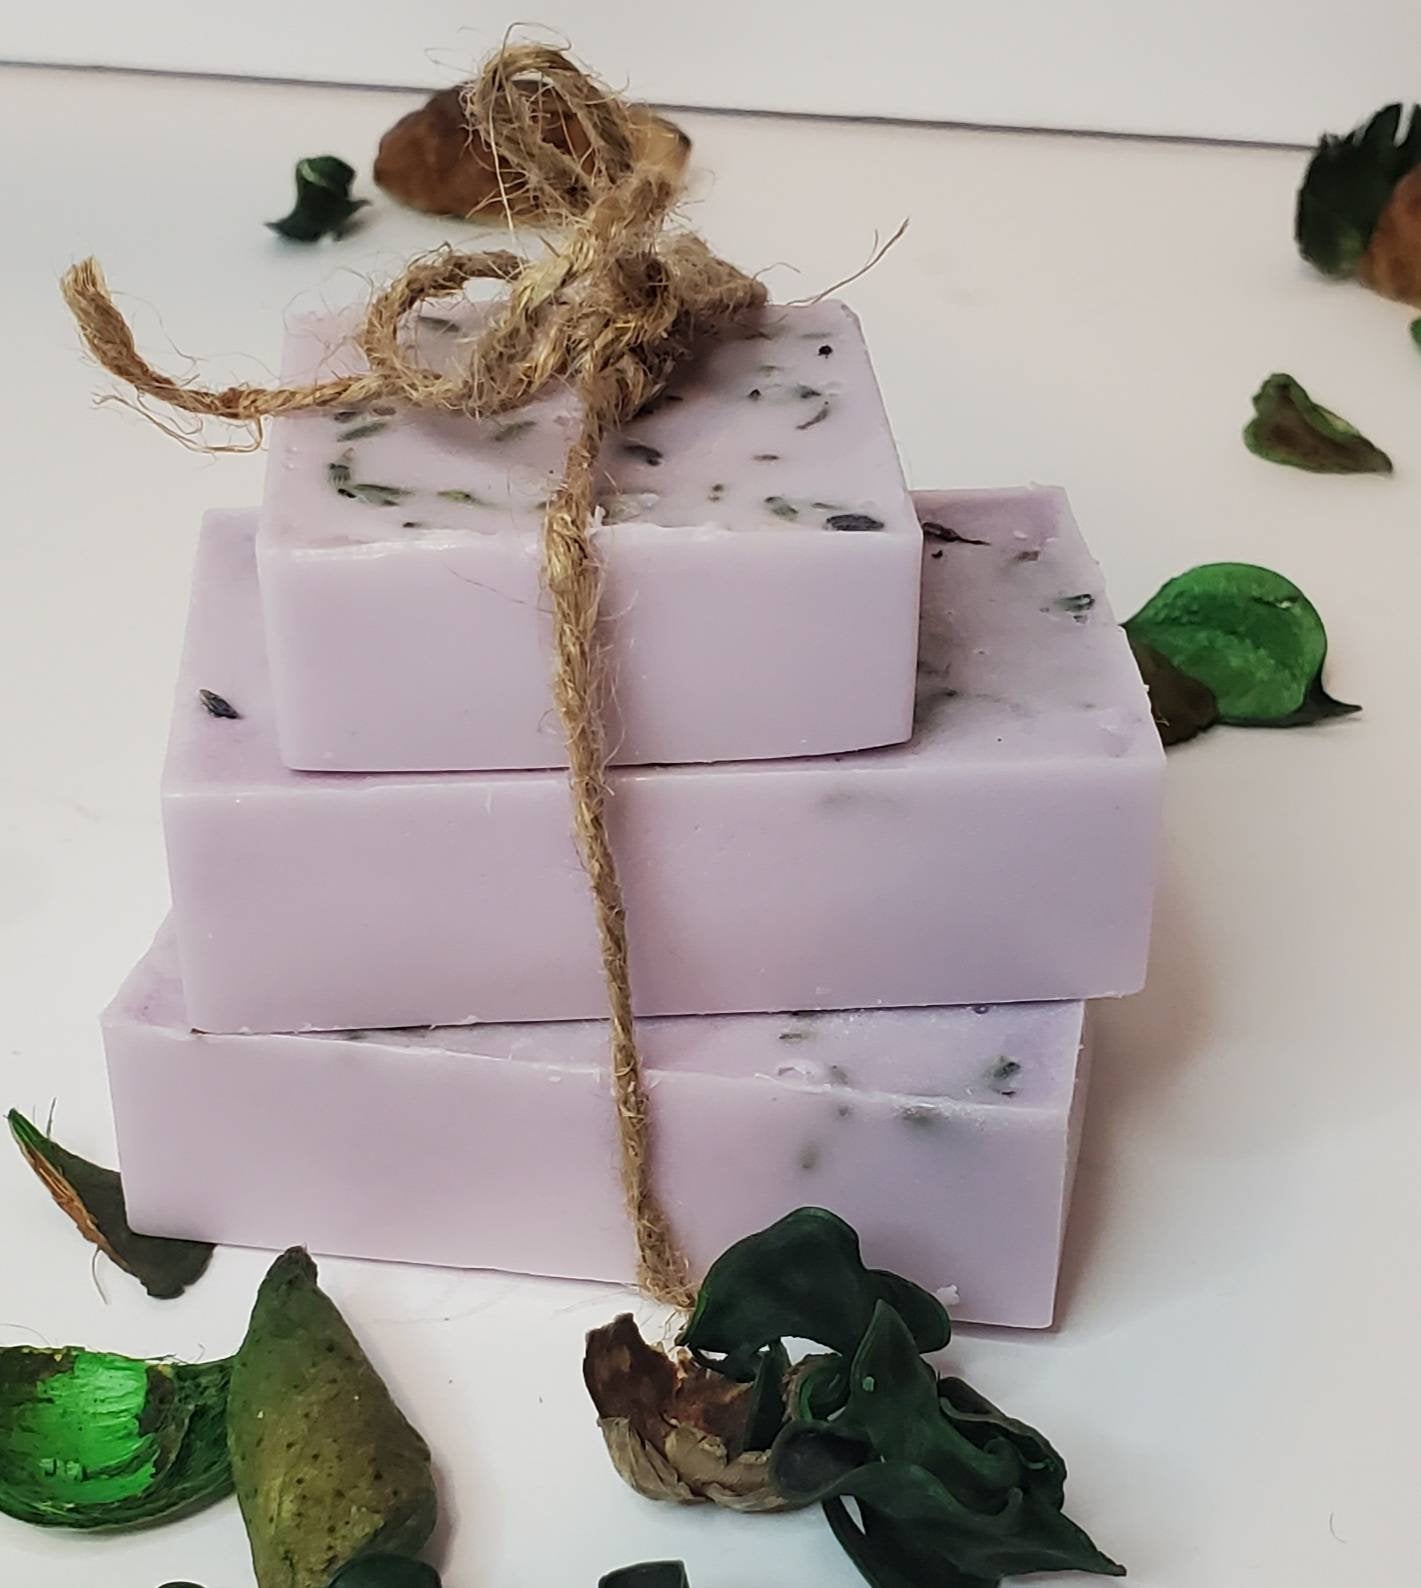 Lavender Natural Soap Bar